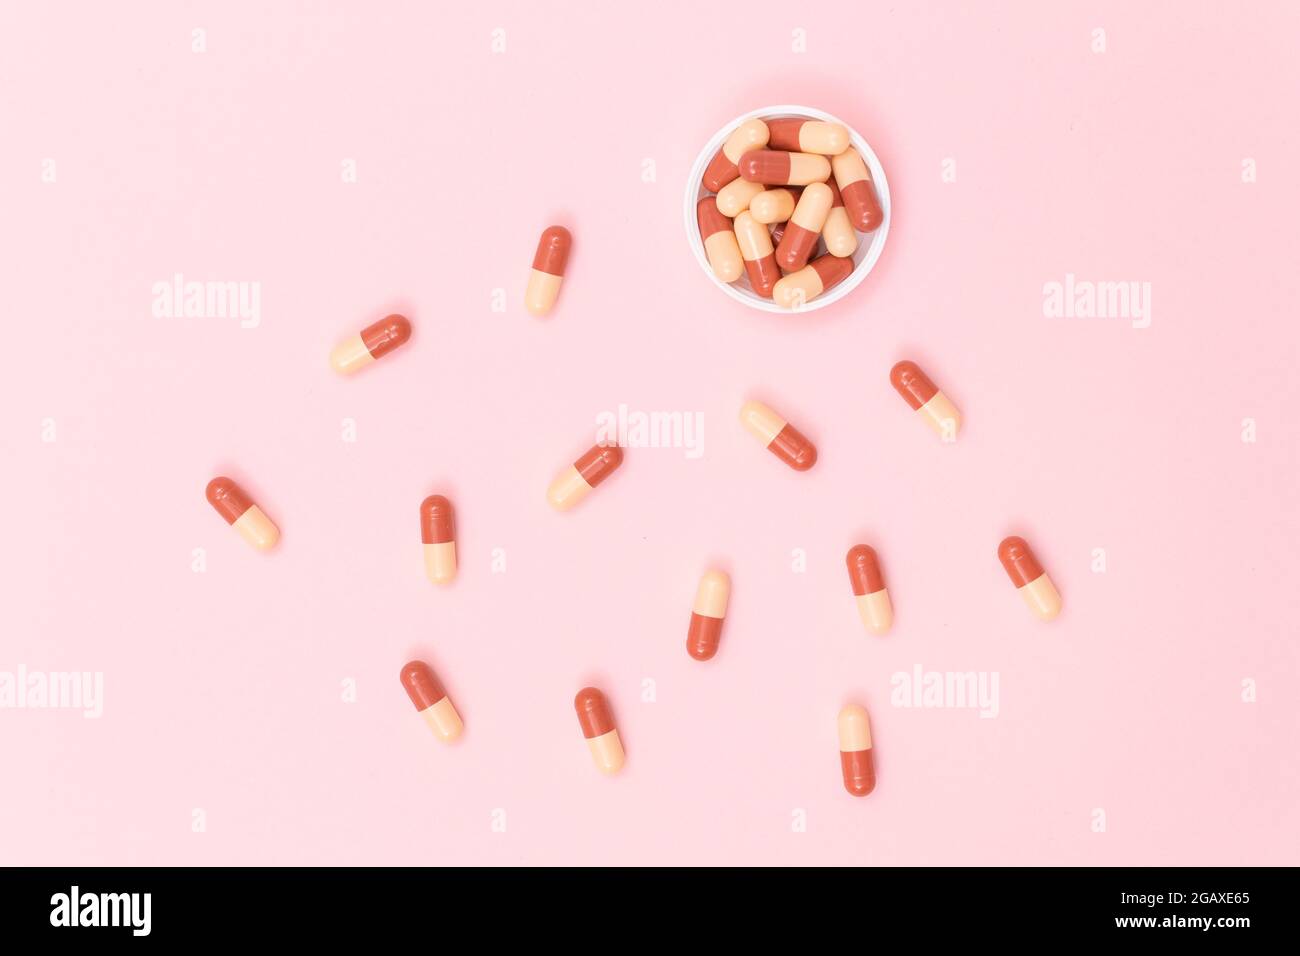 Globale Pharmaindustrie und Medizinprodukte - farbige Pillen oder Kapseln auf rosa Hintergrund verstreut Stockfoto